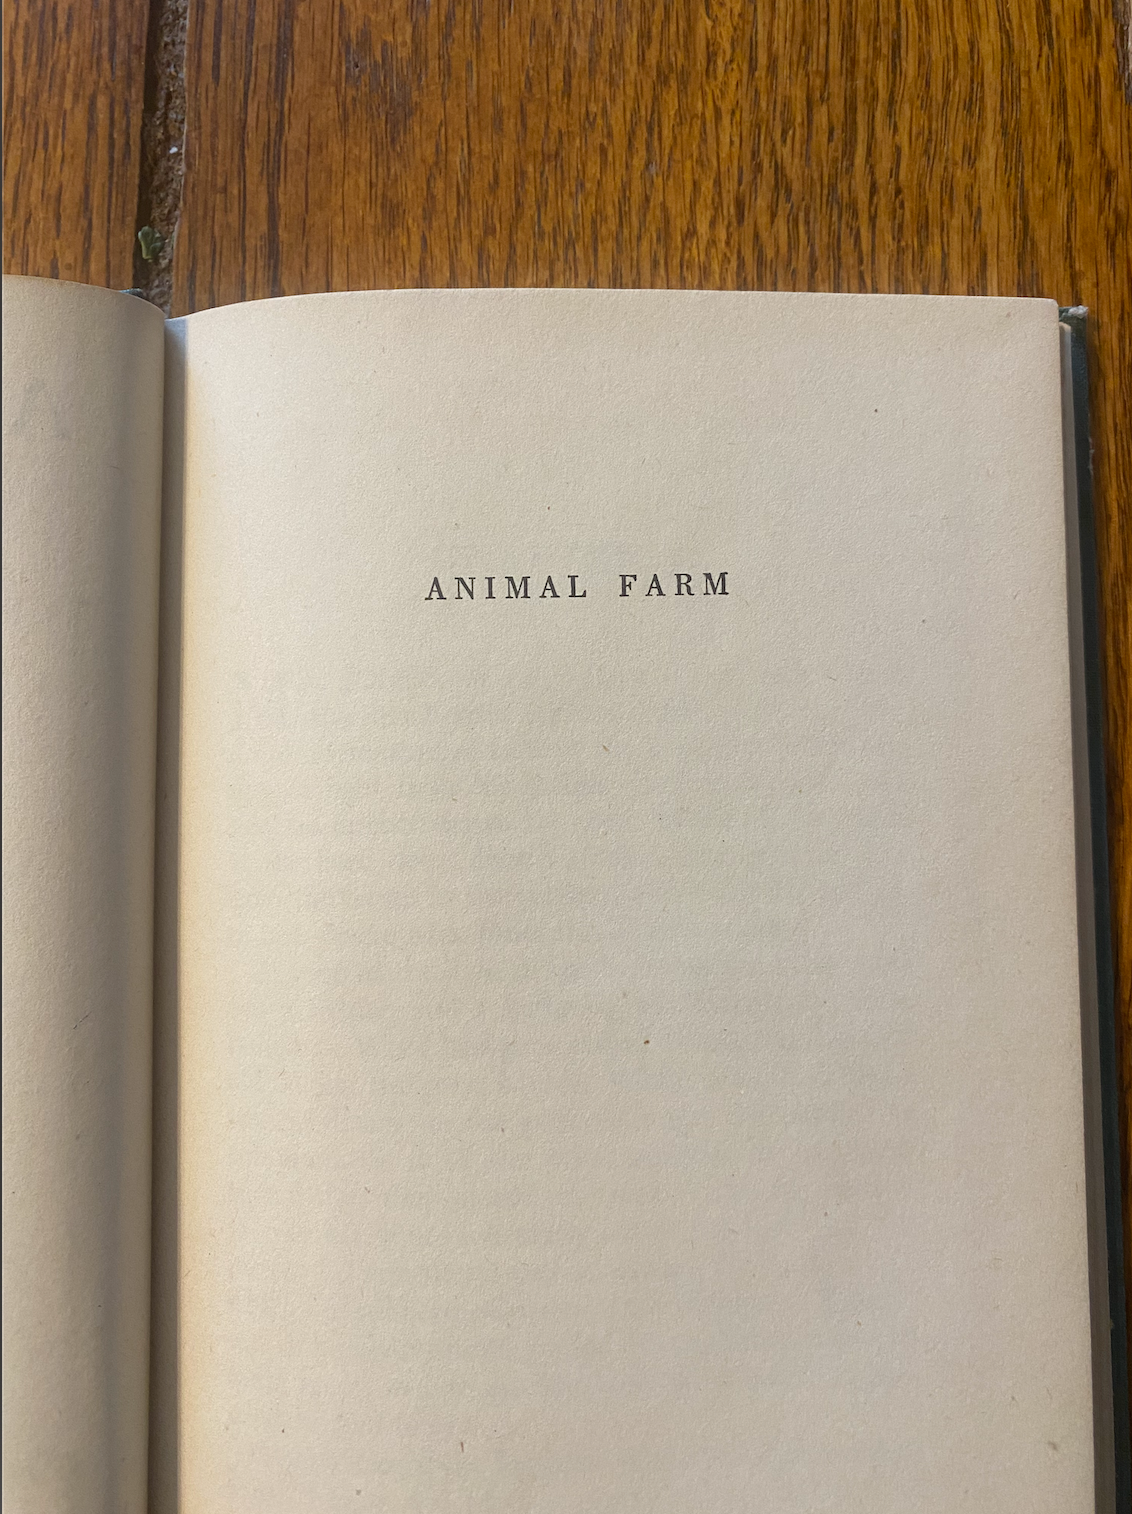 Animal Farm - George Orwell (First US Edition) 1946